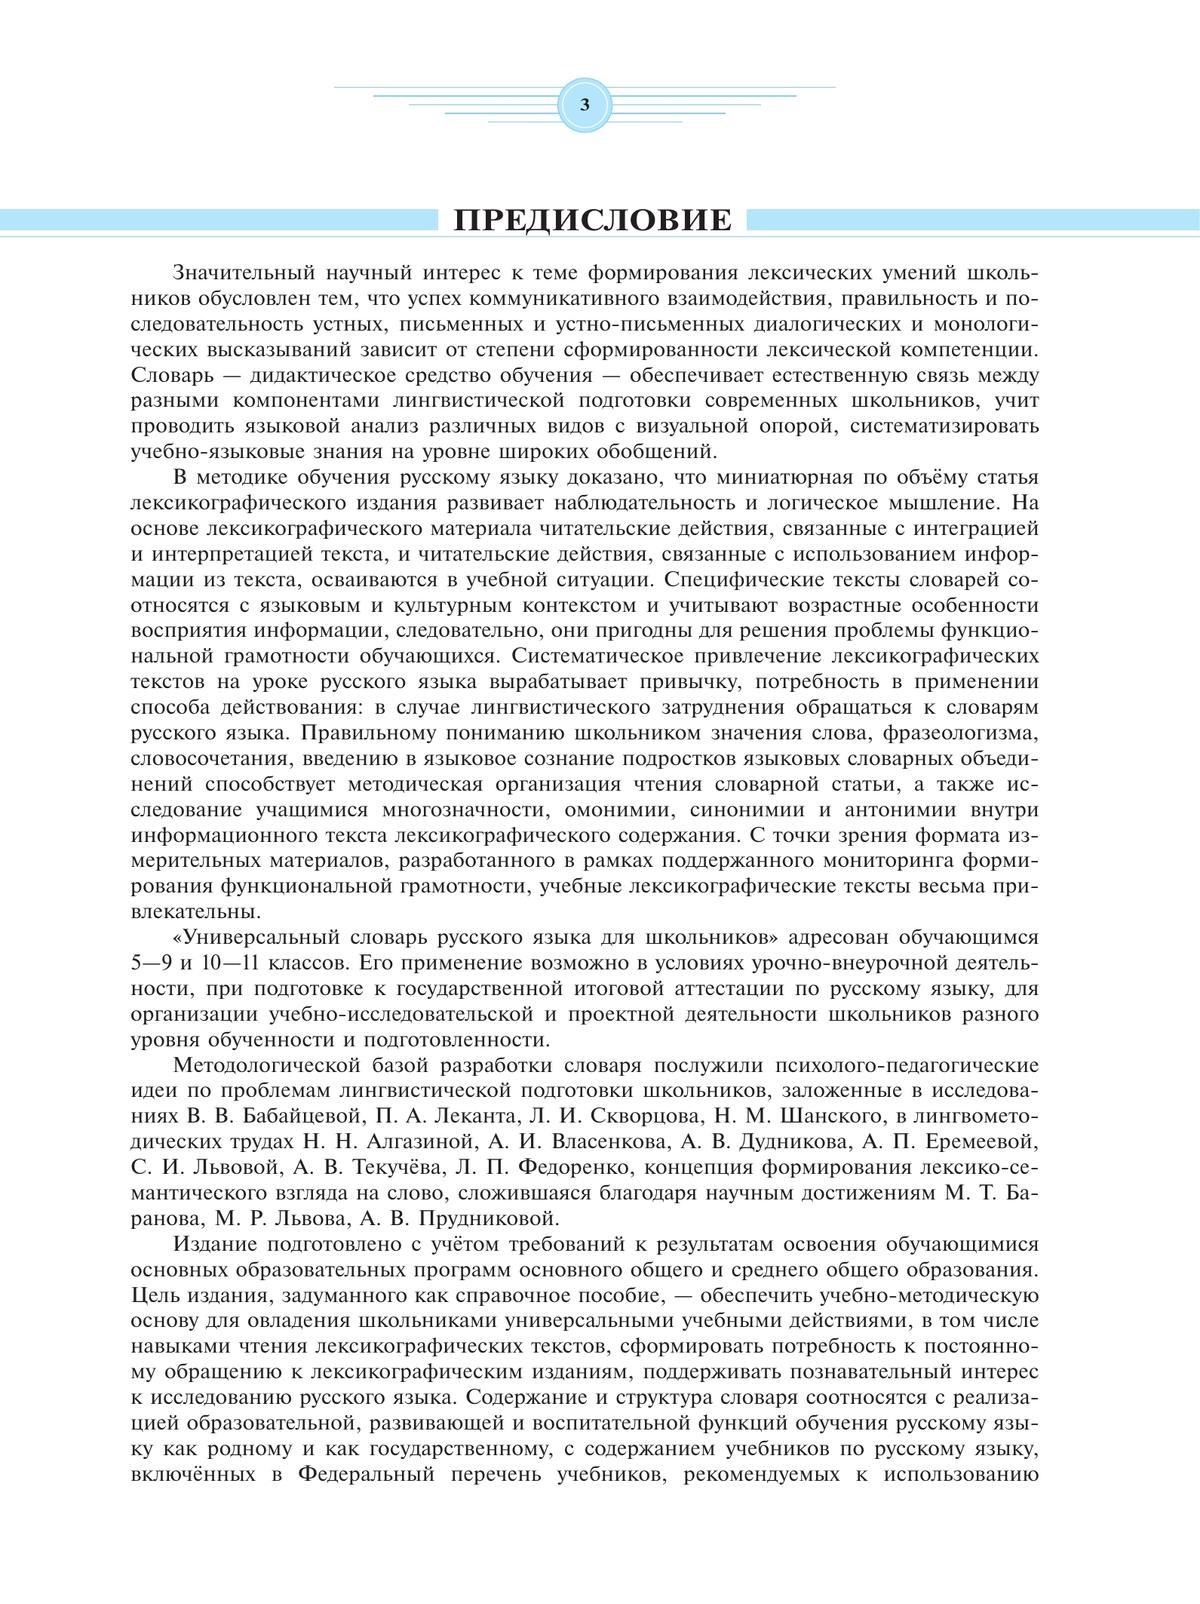 Универсальный словарь русского языка для школьников: более 5000 словарных статей 11